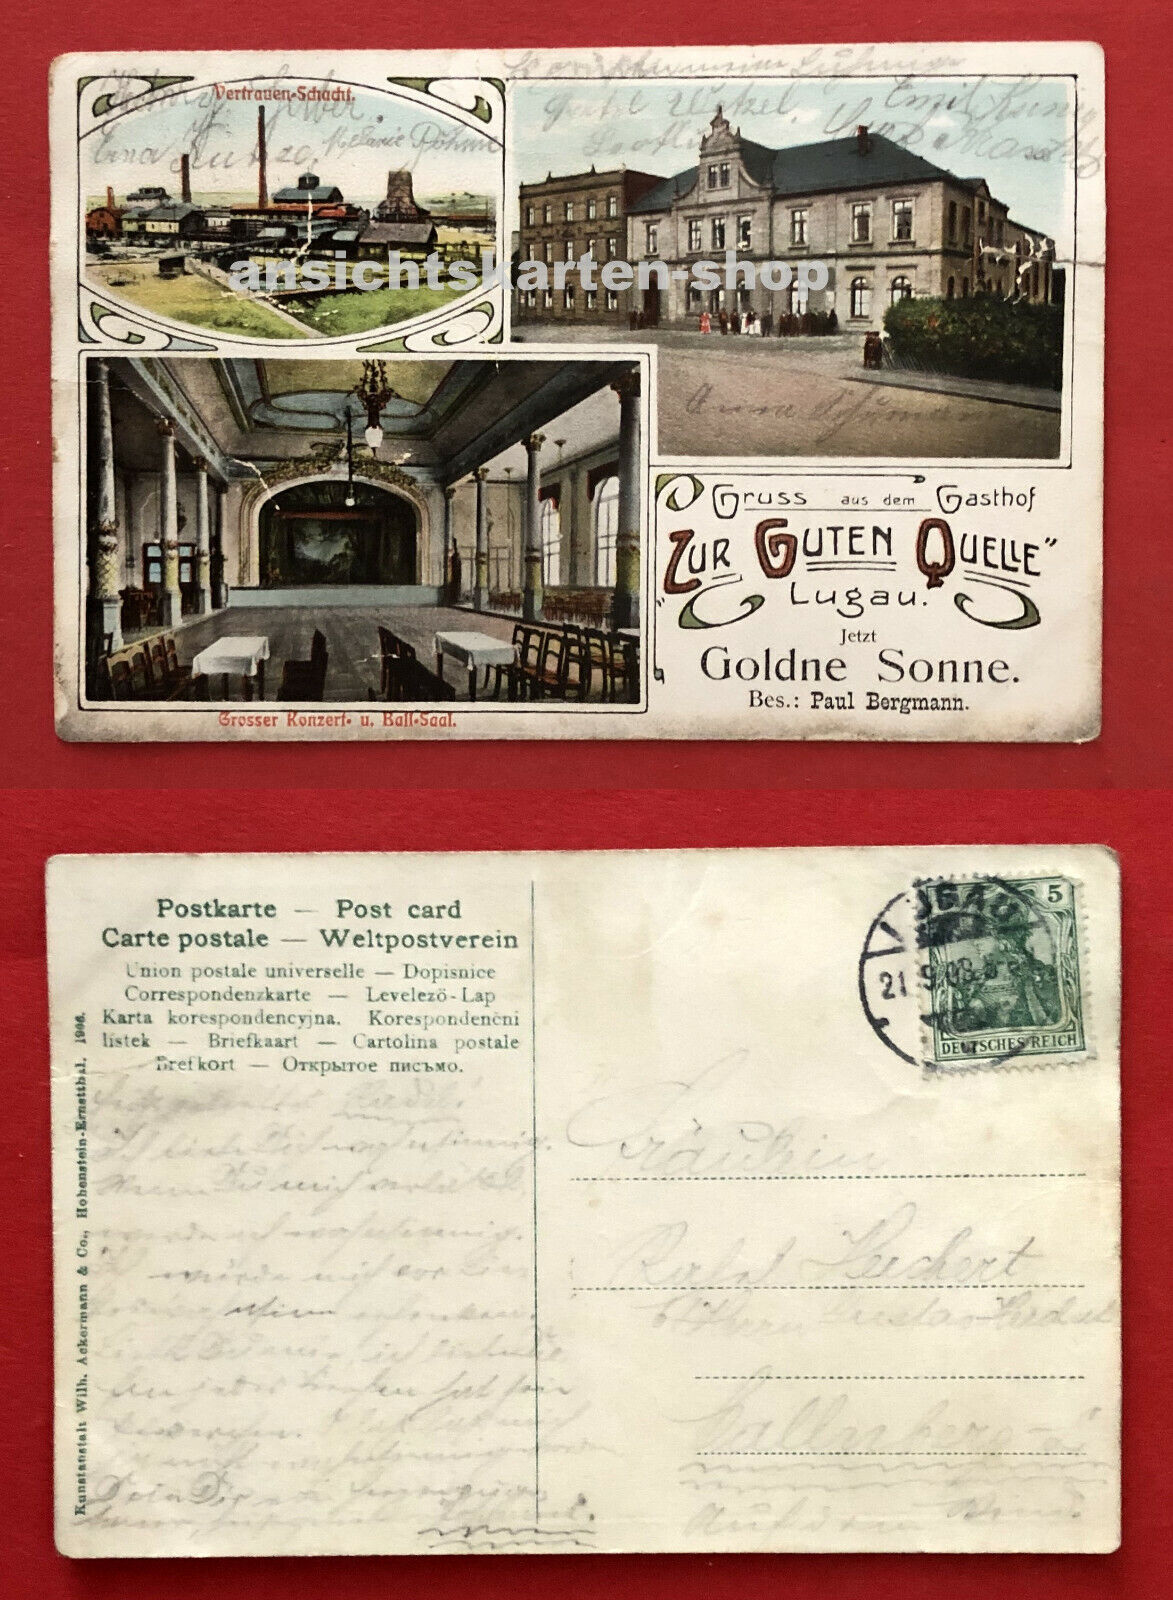 Details zu  AK LUGAU bei Oelsnitz im Erzgebirge 1908 Vertrauen Schacht und Gasthaus  ( 77964 Sofortige Lieferung von Lagerbeständen